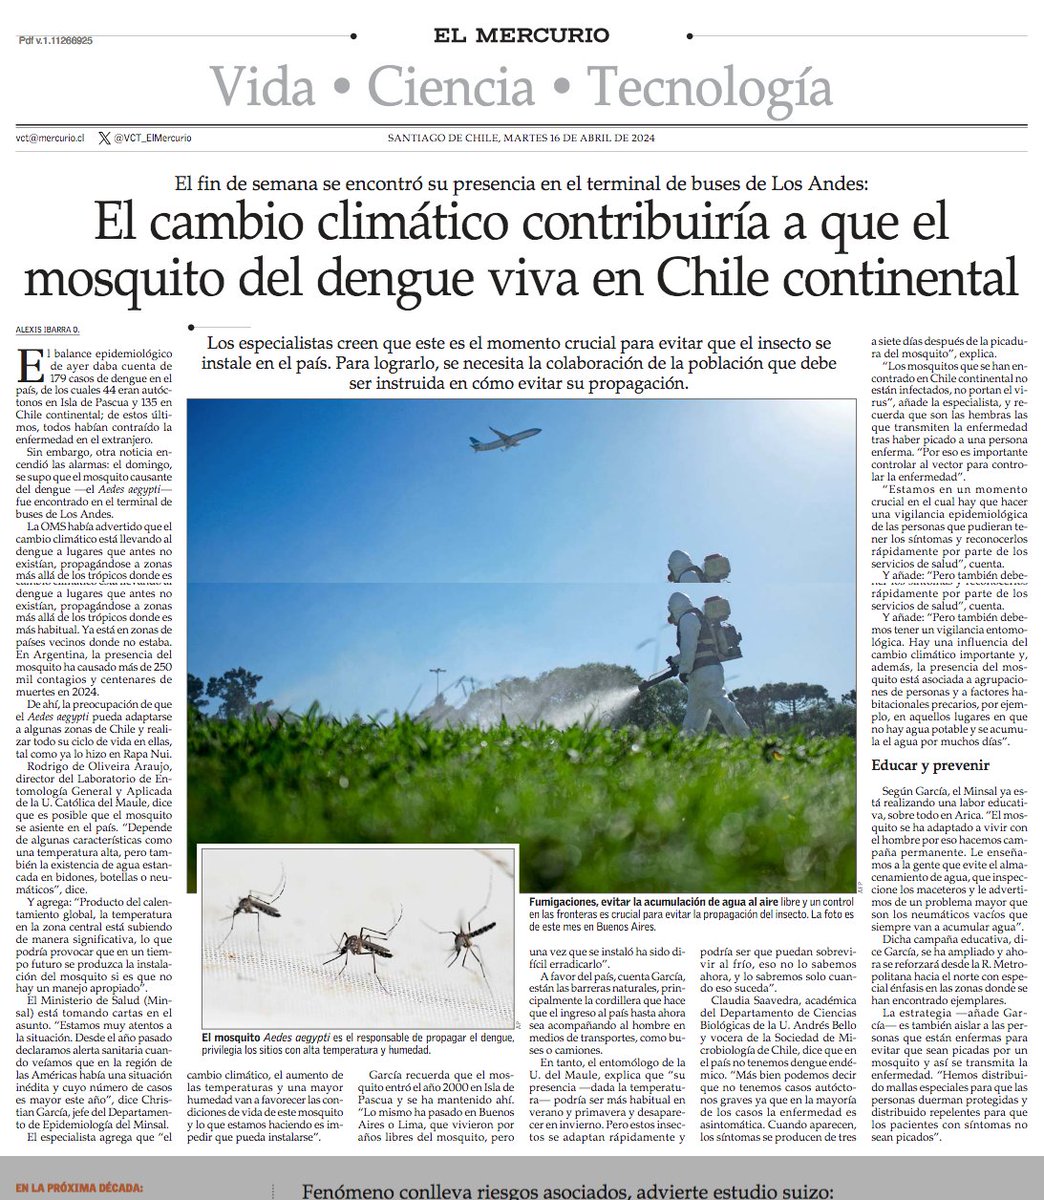 El cambio climático contribuirá a que el mosquito del #dengue viva en Chile continental. El fin de semana se encontró su presencia en el terminal de buses de Los Andes. #VCTElMercurio shorturl.at/ptBQT